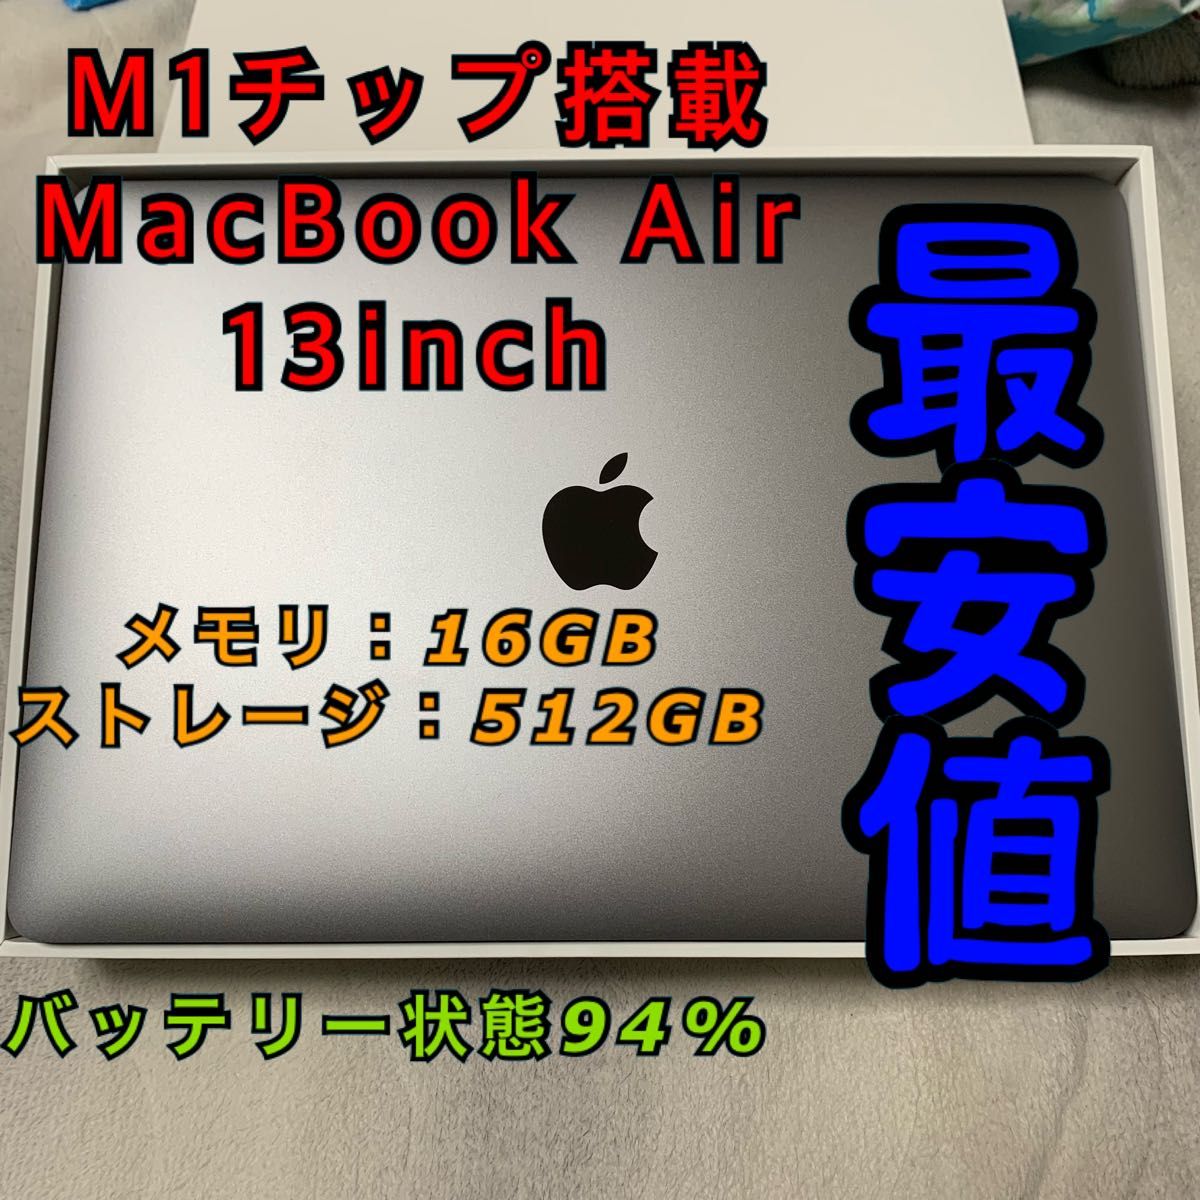 M1 MacBook Air 13inch メモリ16GB ストレージ512GB バッテリー状態94